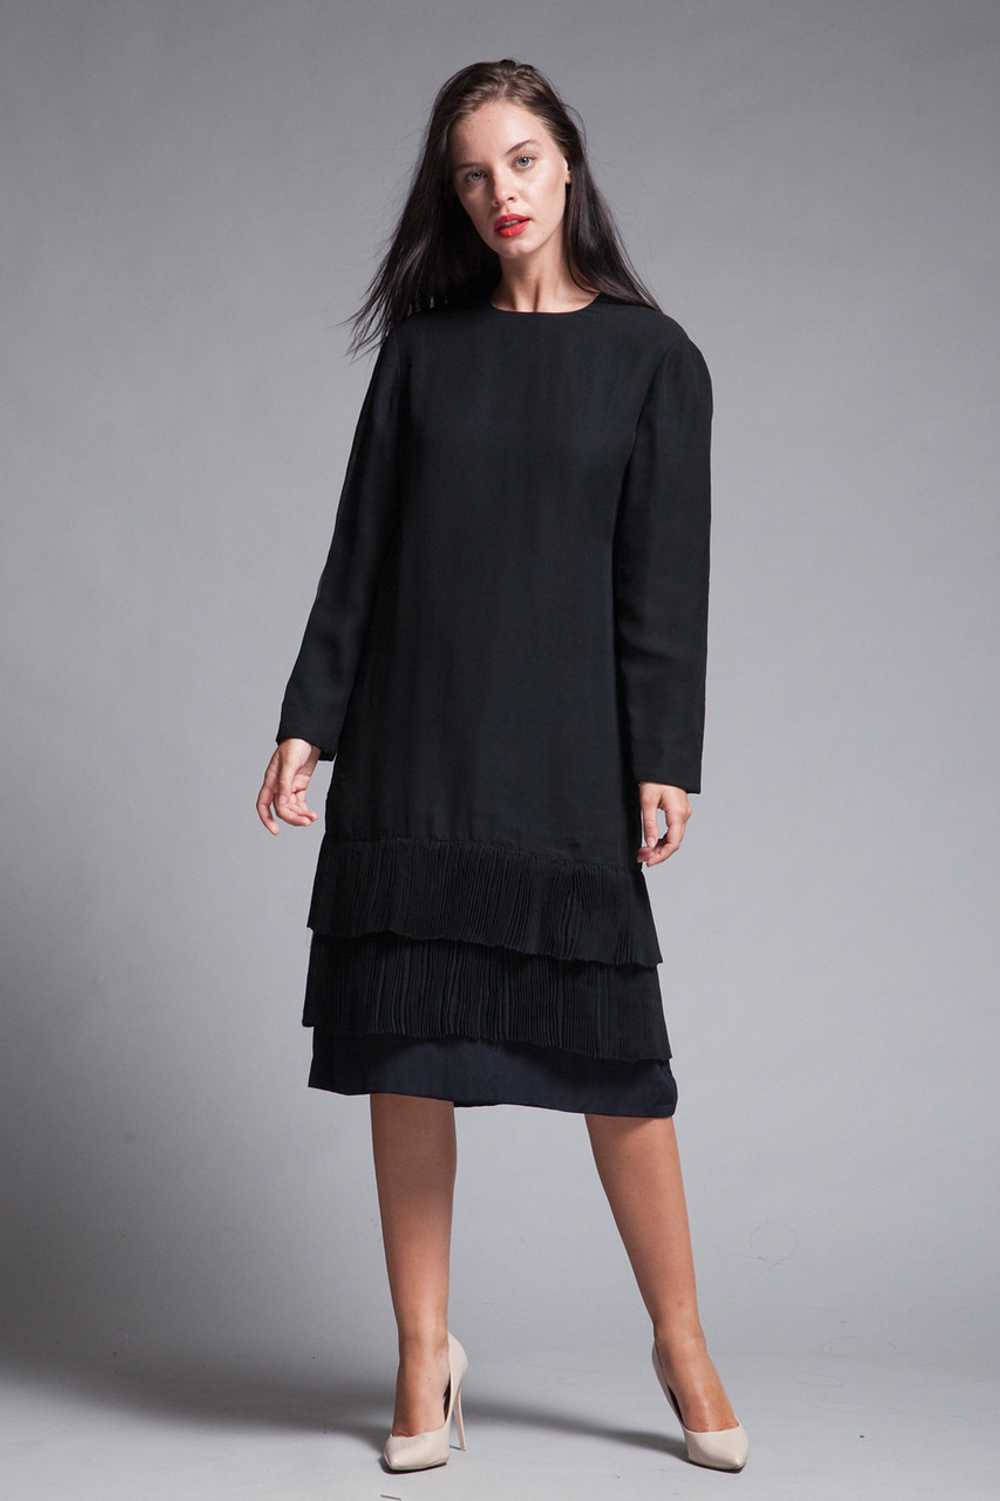 black pleated dress long sleeves sheer flowy vint… - image 1